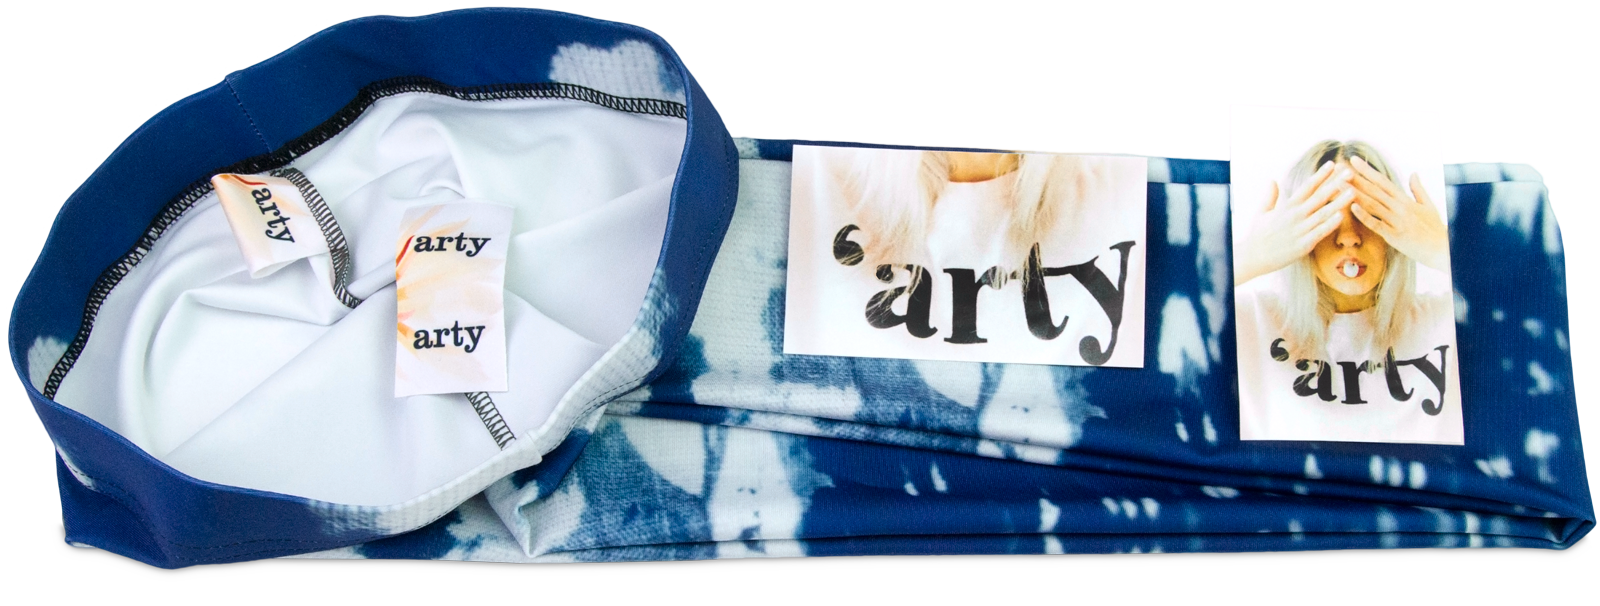 Wrap skirt branding options